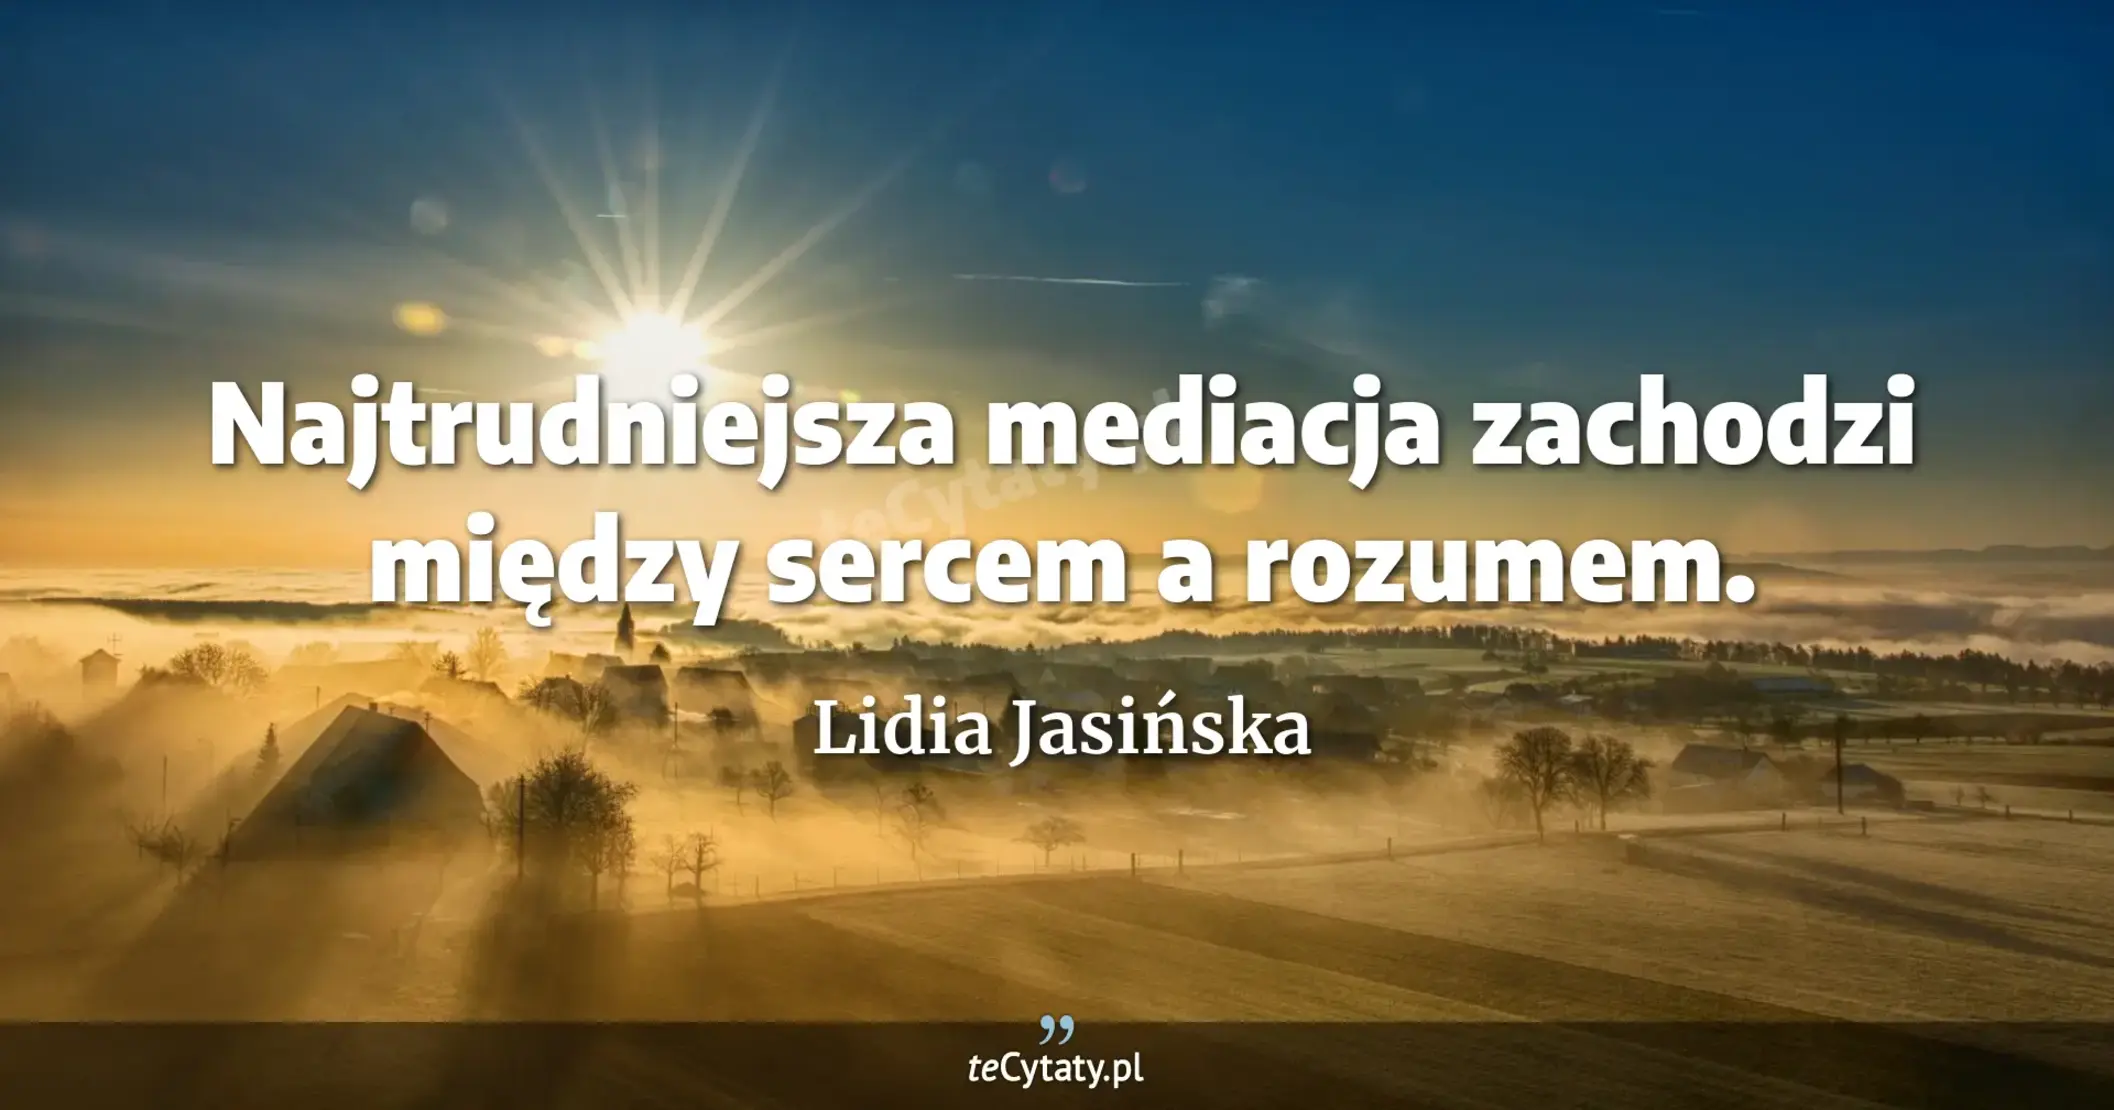 Najtrudniejsza mediacja zachodzi między sercem a rozumem. - Lidia Jasińska